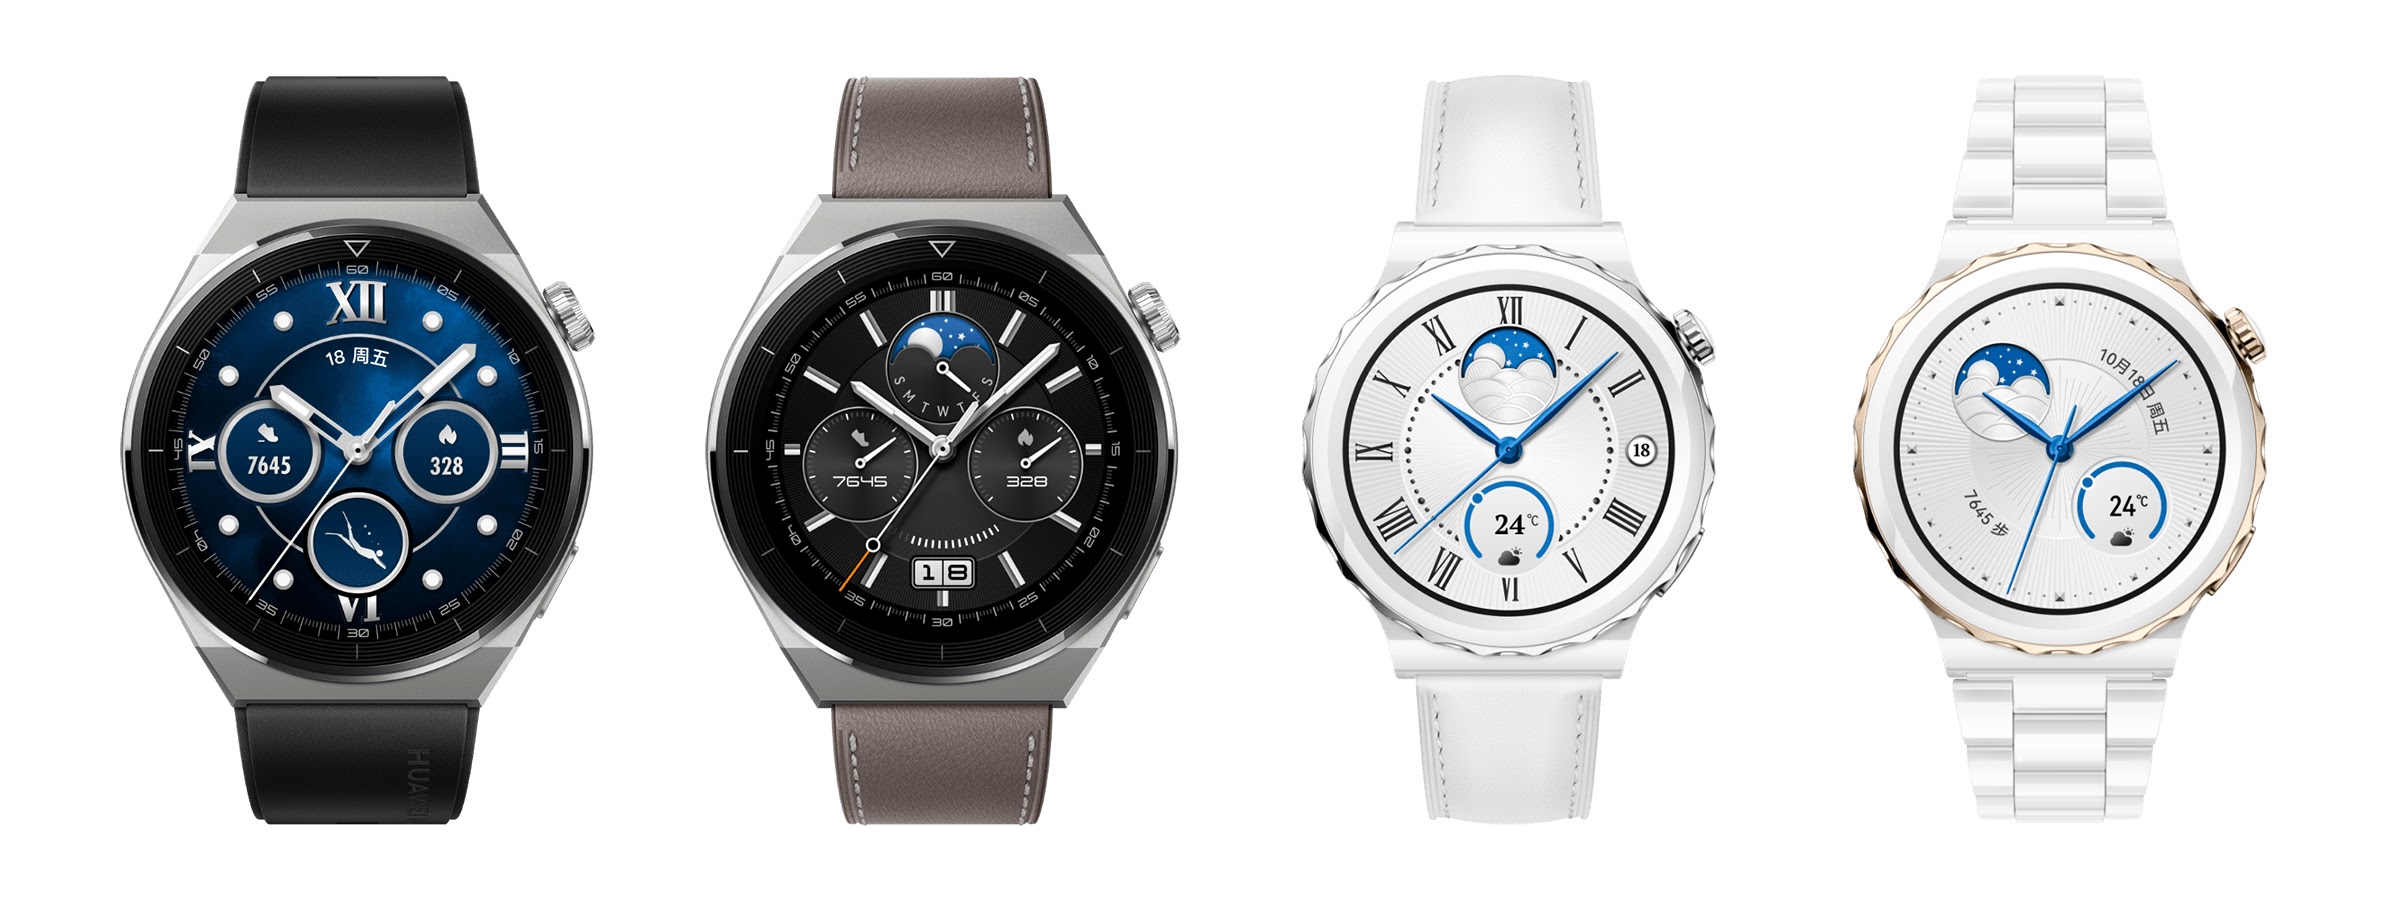 Huawei Watch GT 3 Pro, livello altissimo per i nuovi smartwatch (e c'è anche Band 7)!